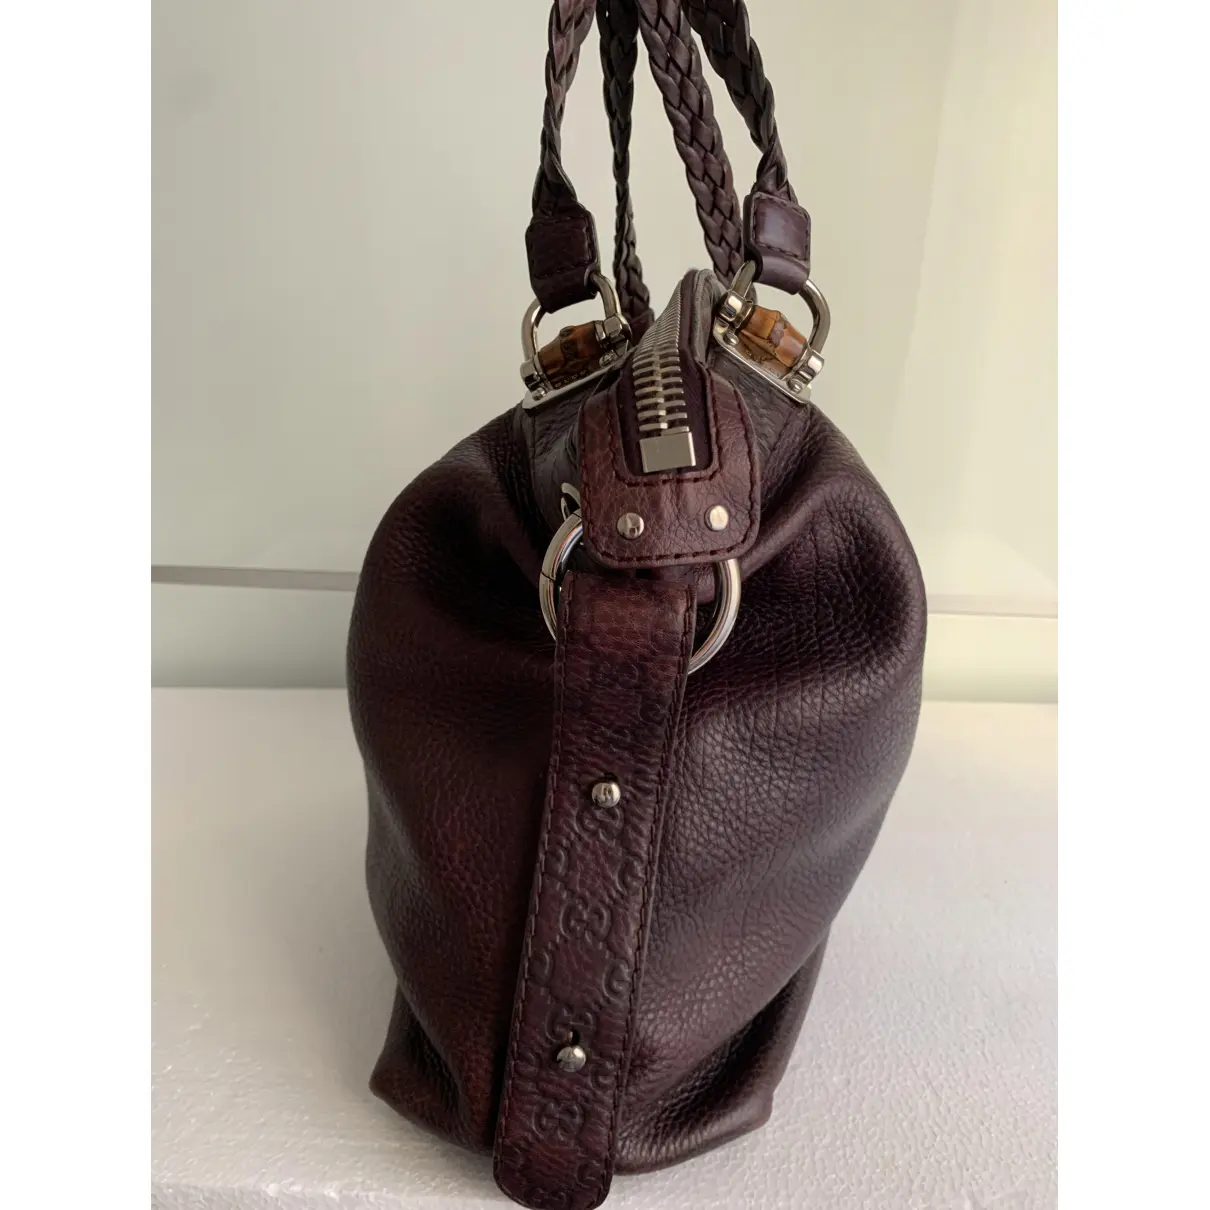 Miss Bamboo Bucket leather handbag Gucci